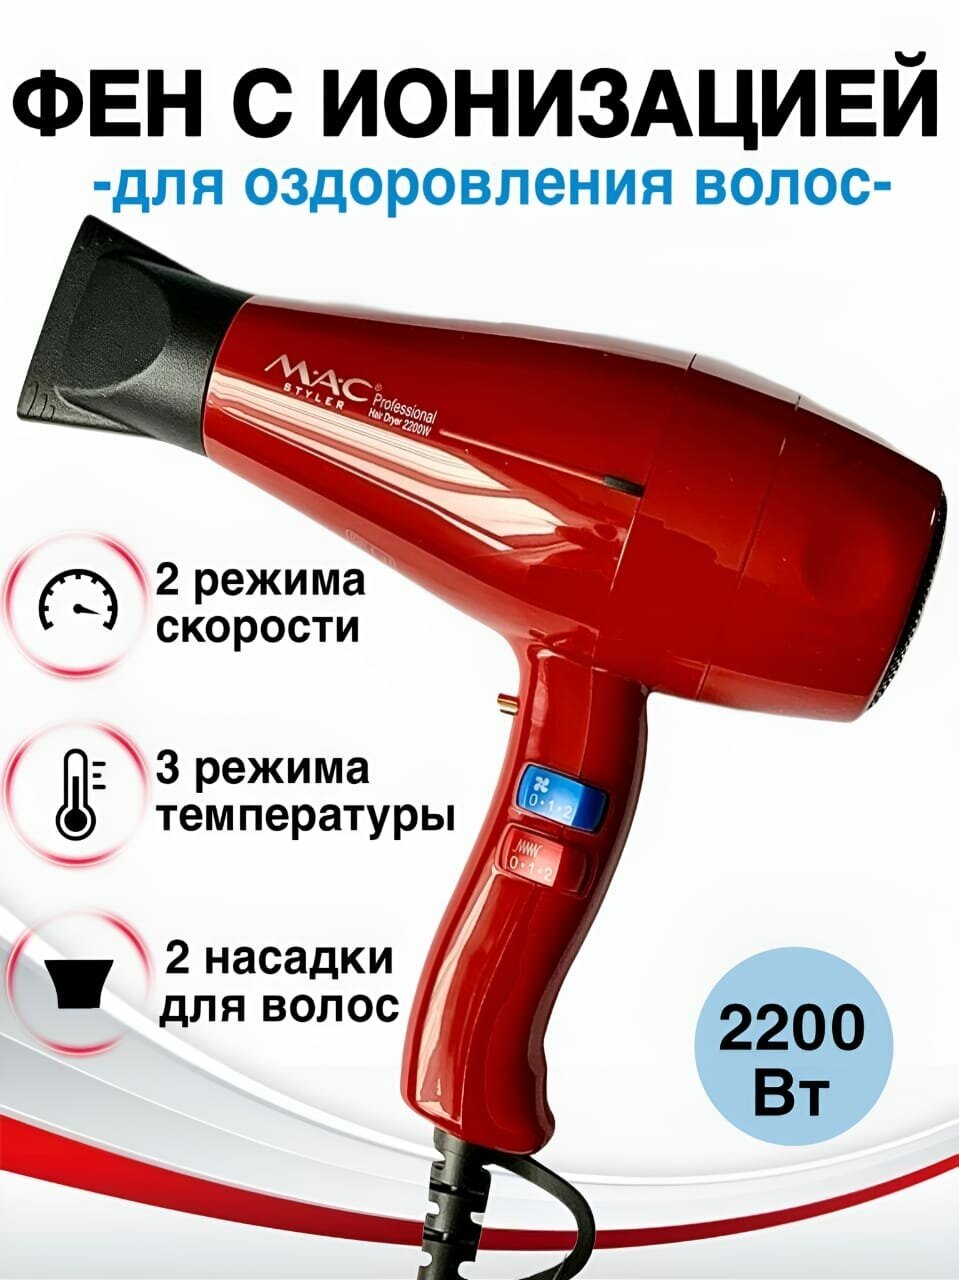 Фен для волос профессиональный с ионизацией M.A.C MC-808 2200 Вт, фен с насадками для укладки и сушки волос, красный - фотография № 1